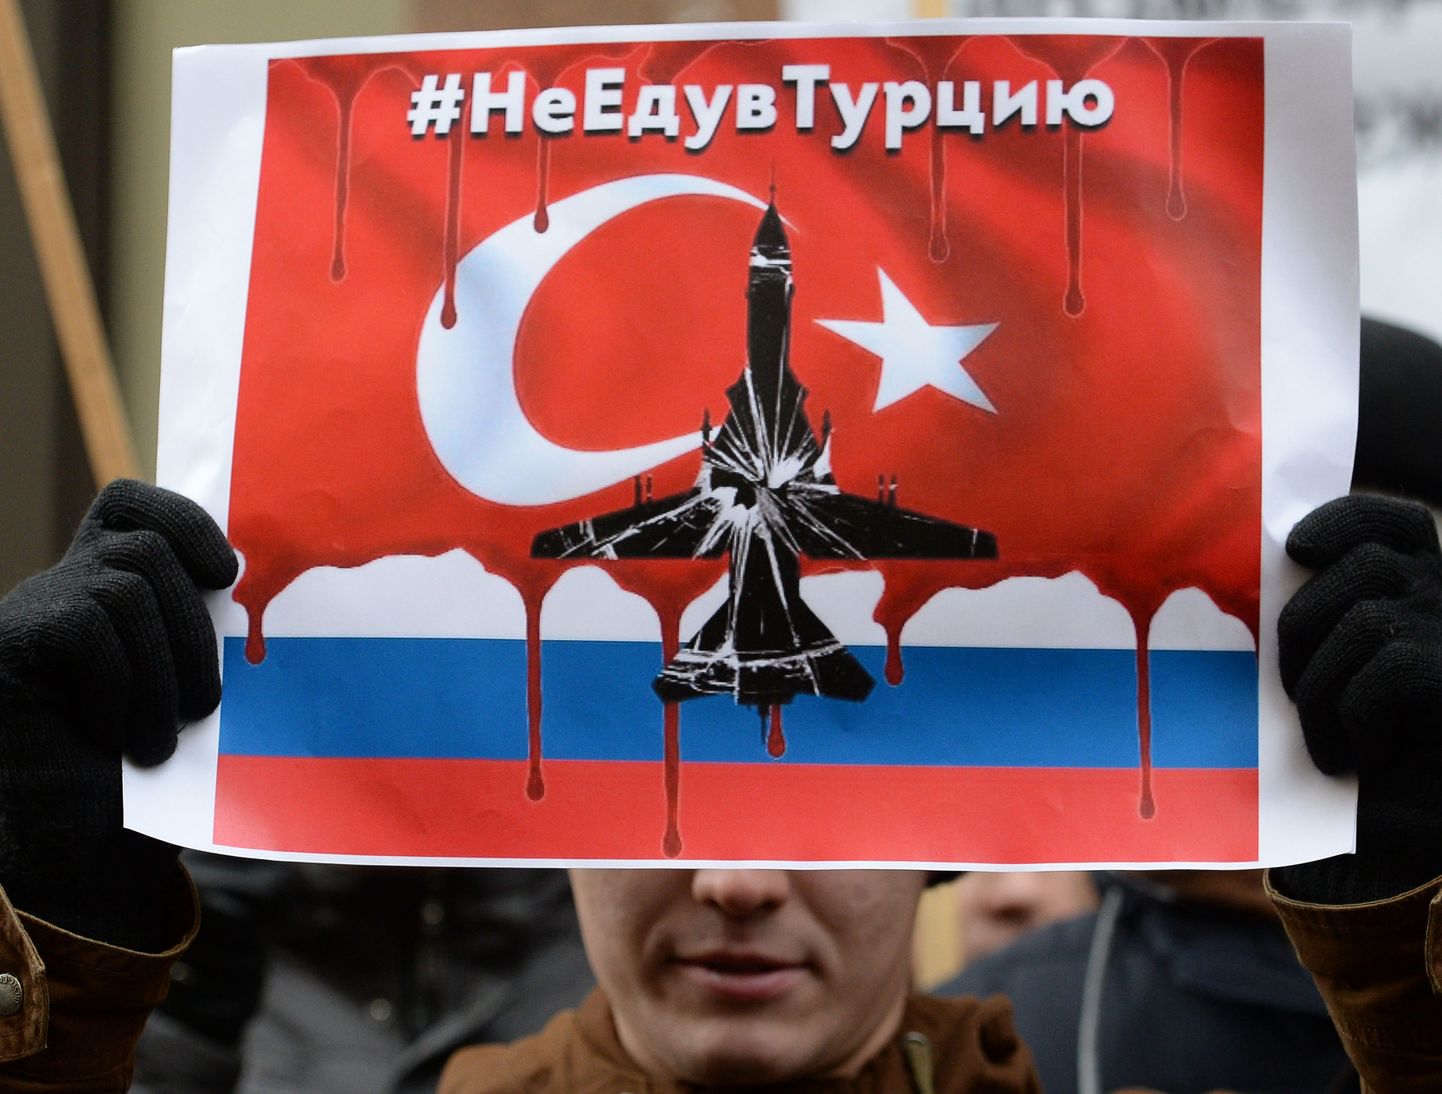 Кризис в отношениях между Турцией и Россией, возникший из-за сбитого бомбардировщика Су-24 российской авиагруппы в Сирии, может быть урегулирован к марту 2016 года.